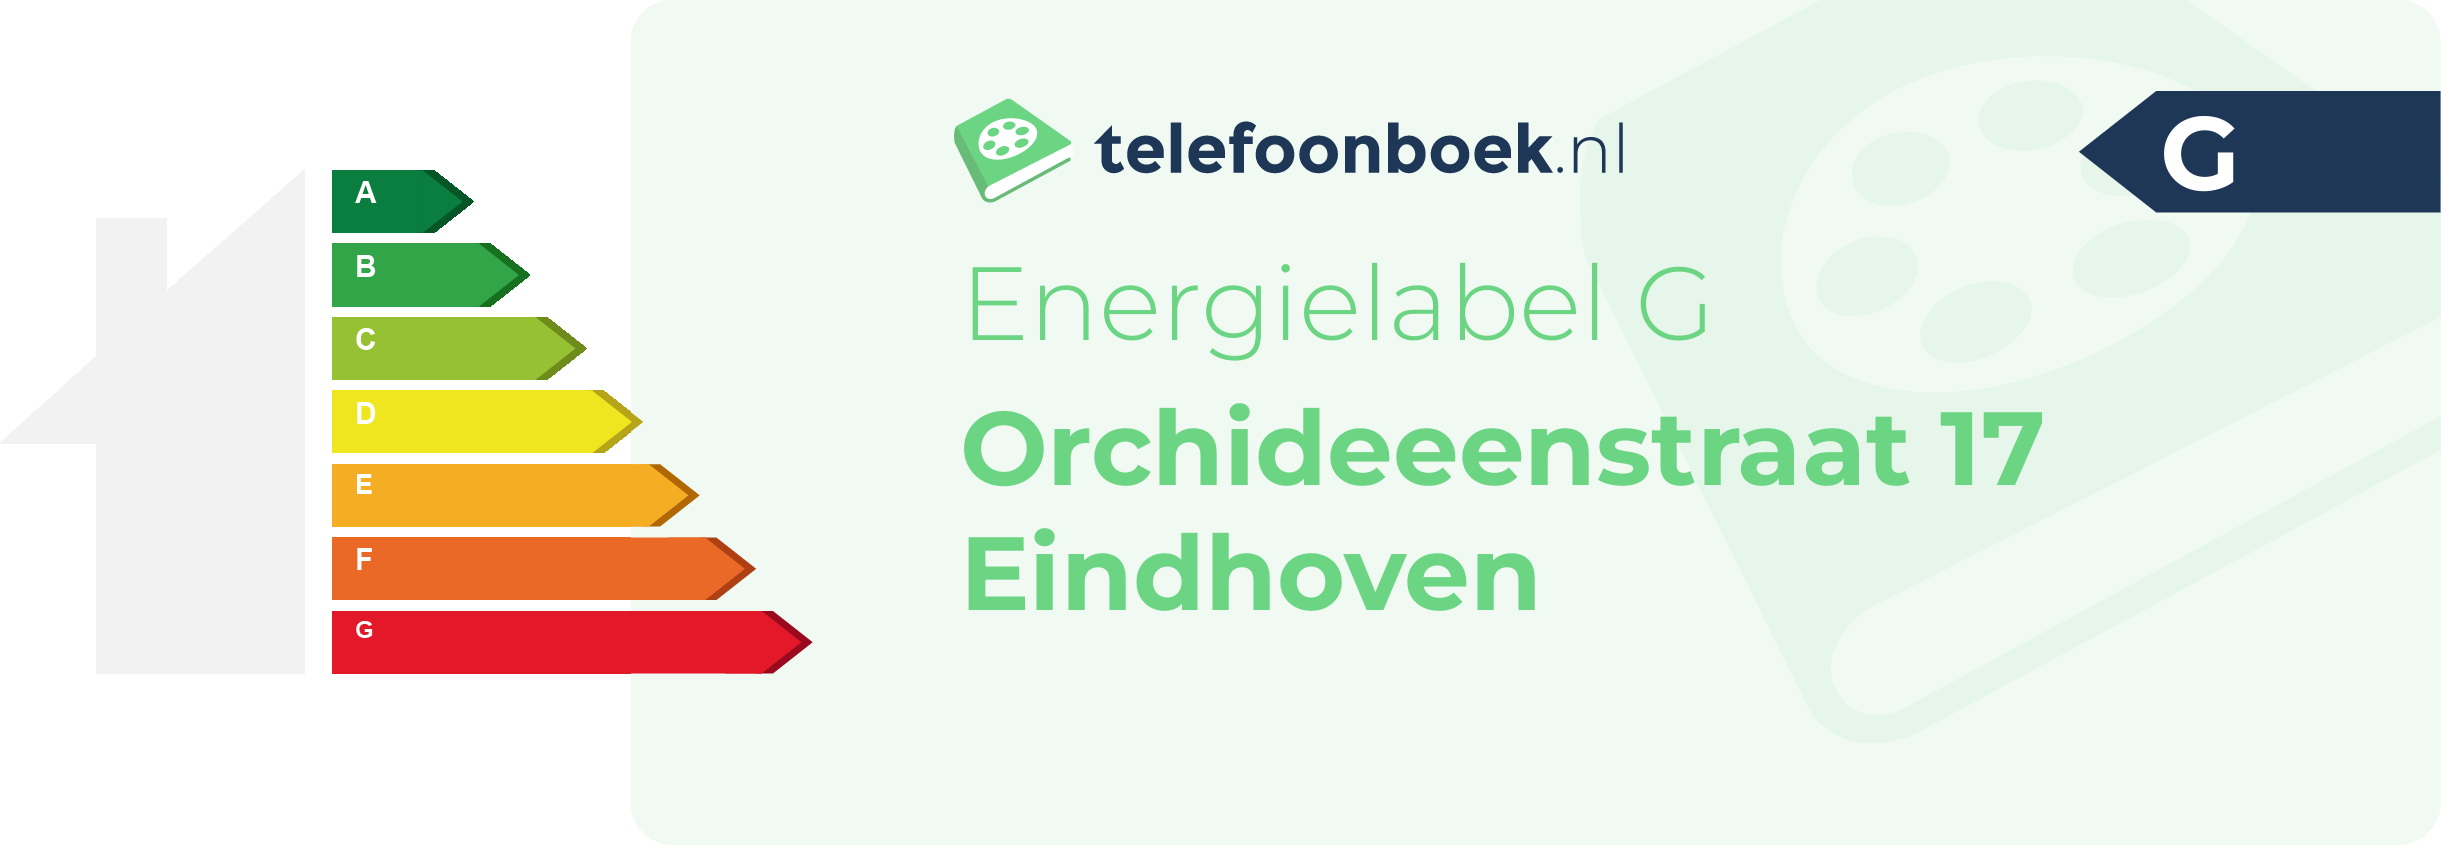 Energielabel Orchideeenstraat 17 Eindhoven